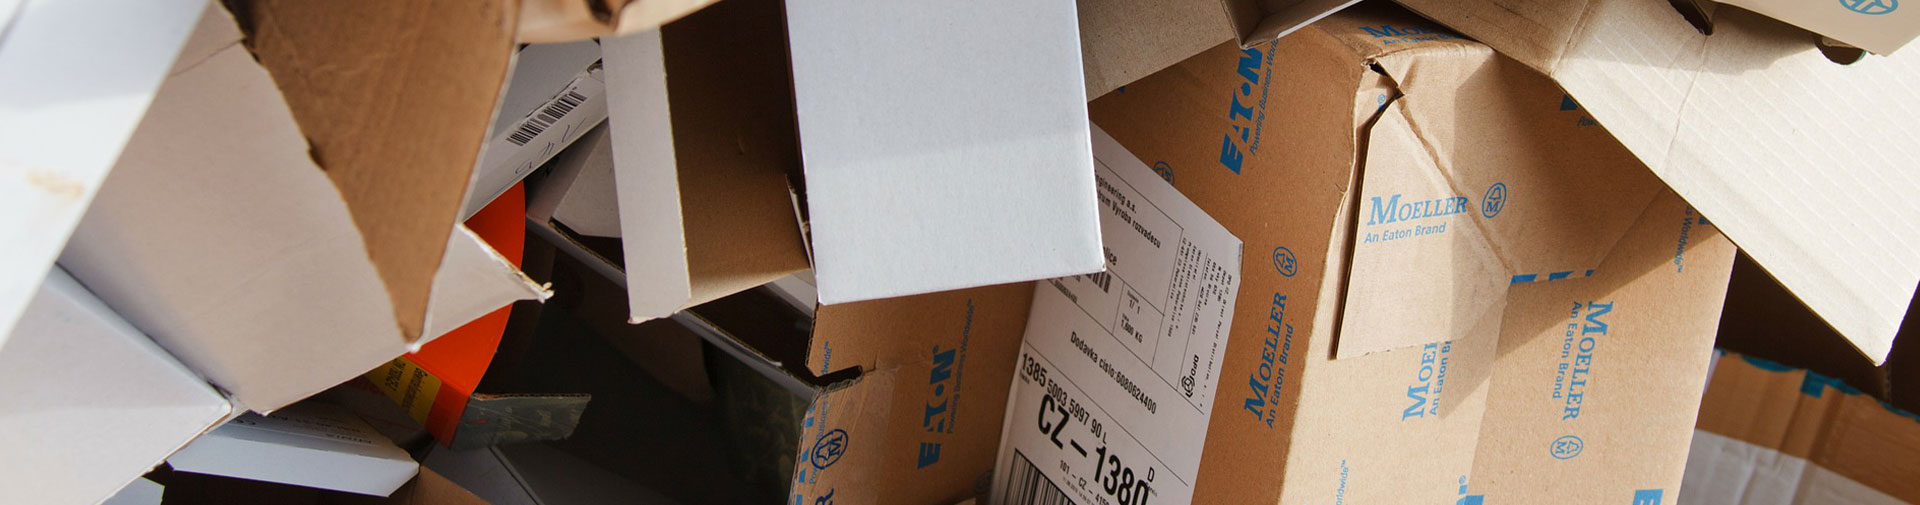 Réutilisez vos colis ! 20 idées sympas pour recycler ses boîtes en carton